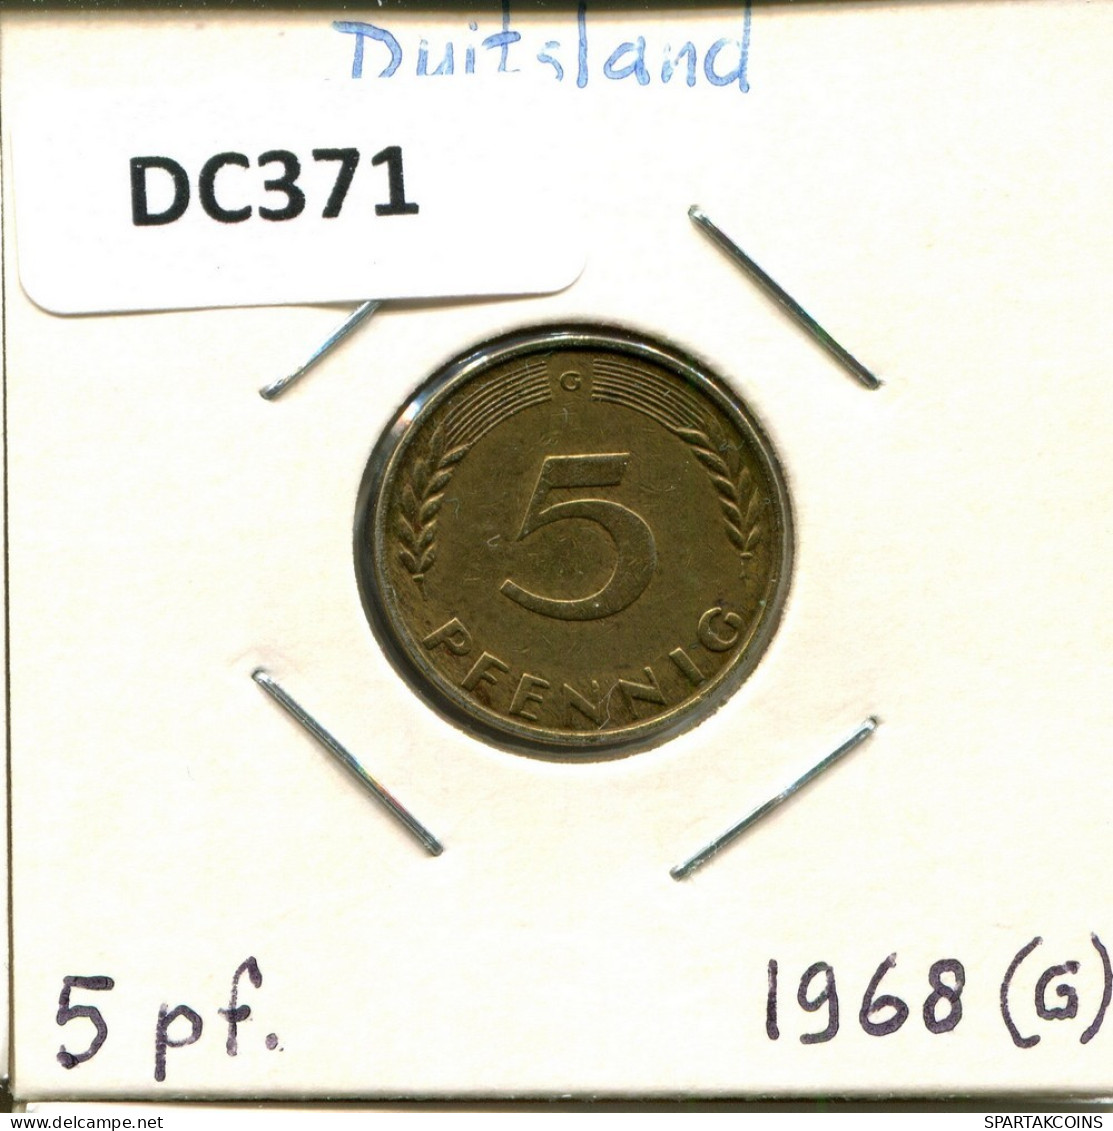 5 PFENNIG 1968 G BRD DEUTSCHLAND Münze GERMANY #DC371.D.A - 5 Pfennig